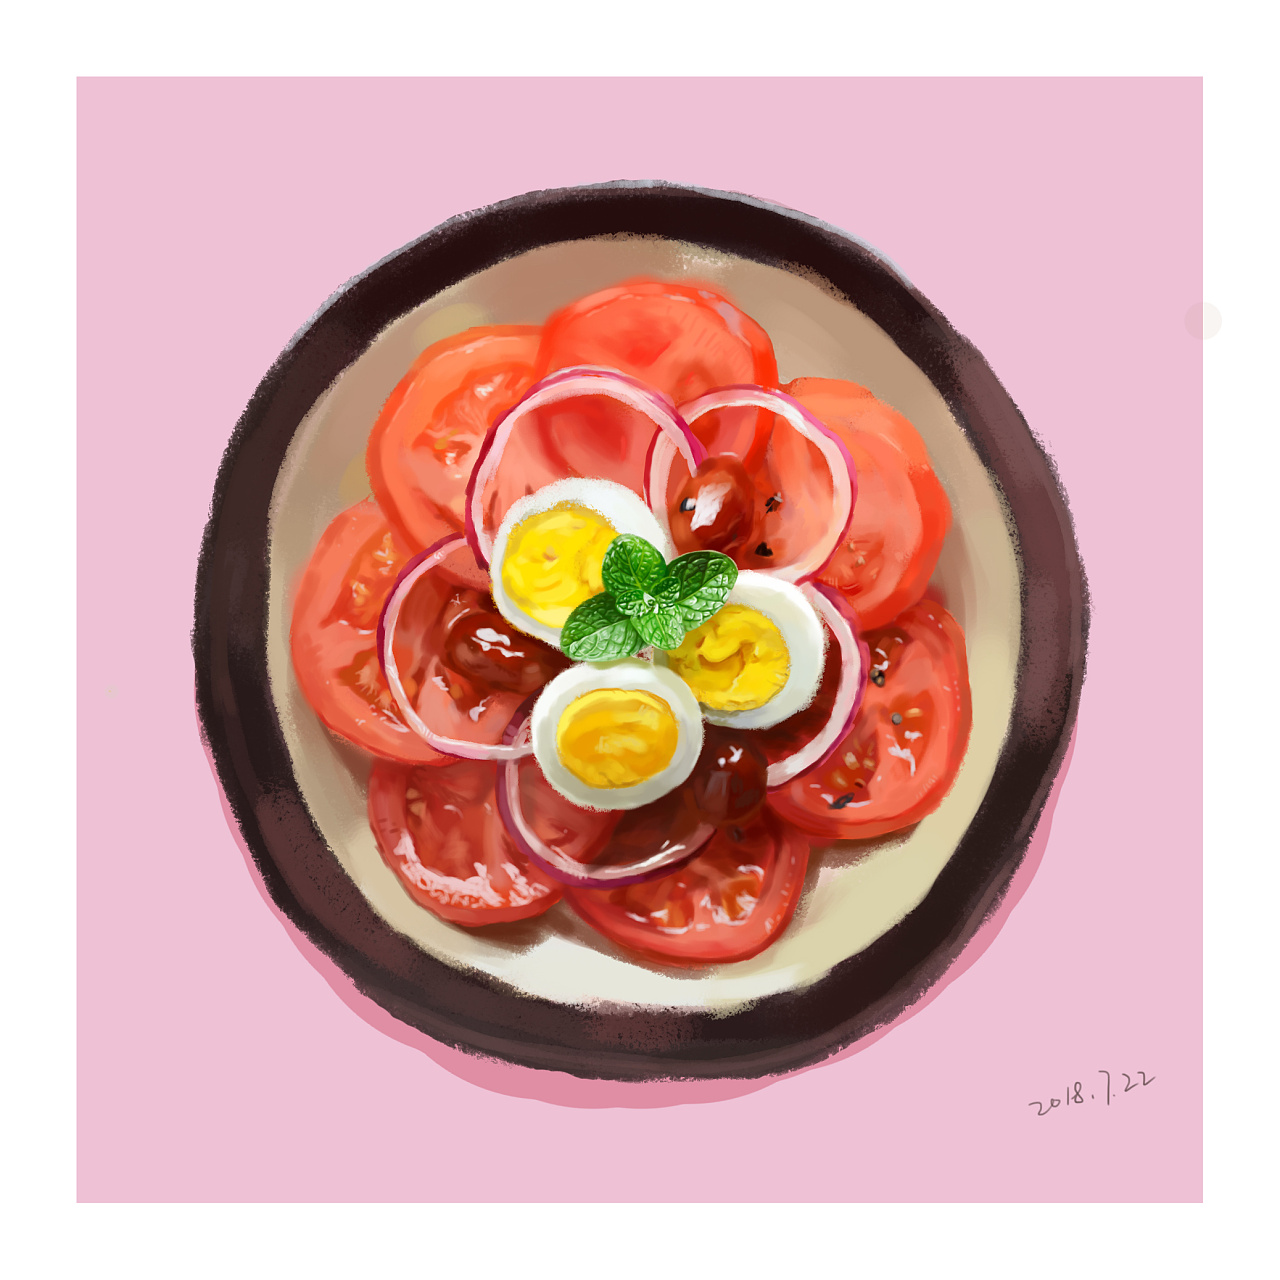 番茄炒蛋的手绘画简单图片